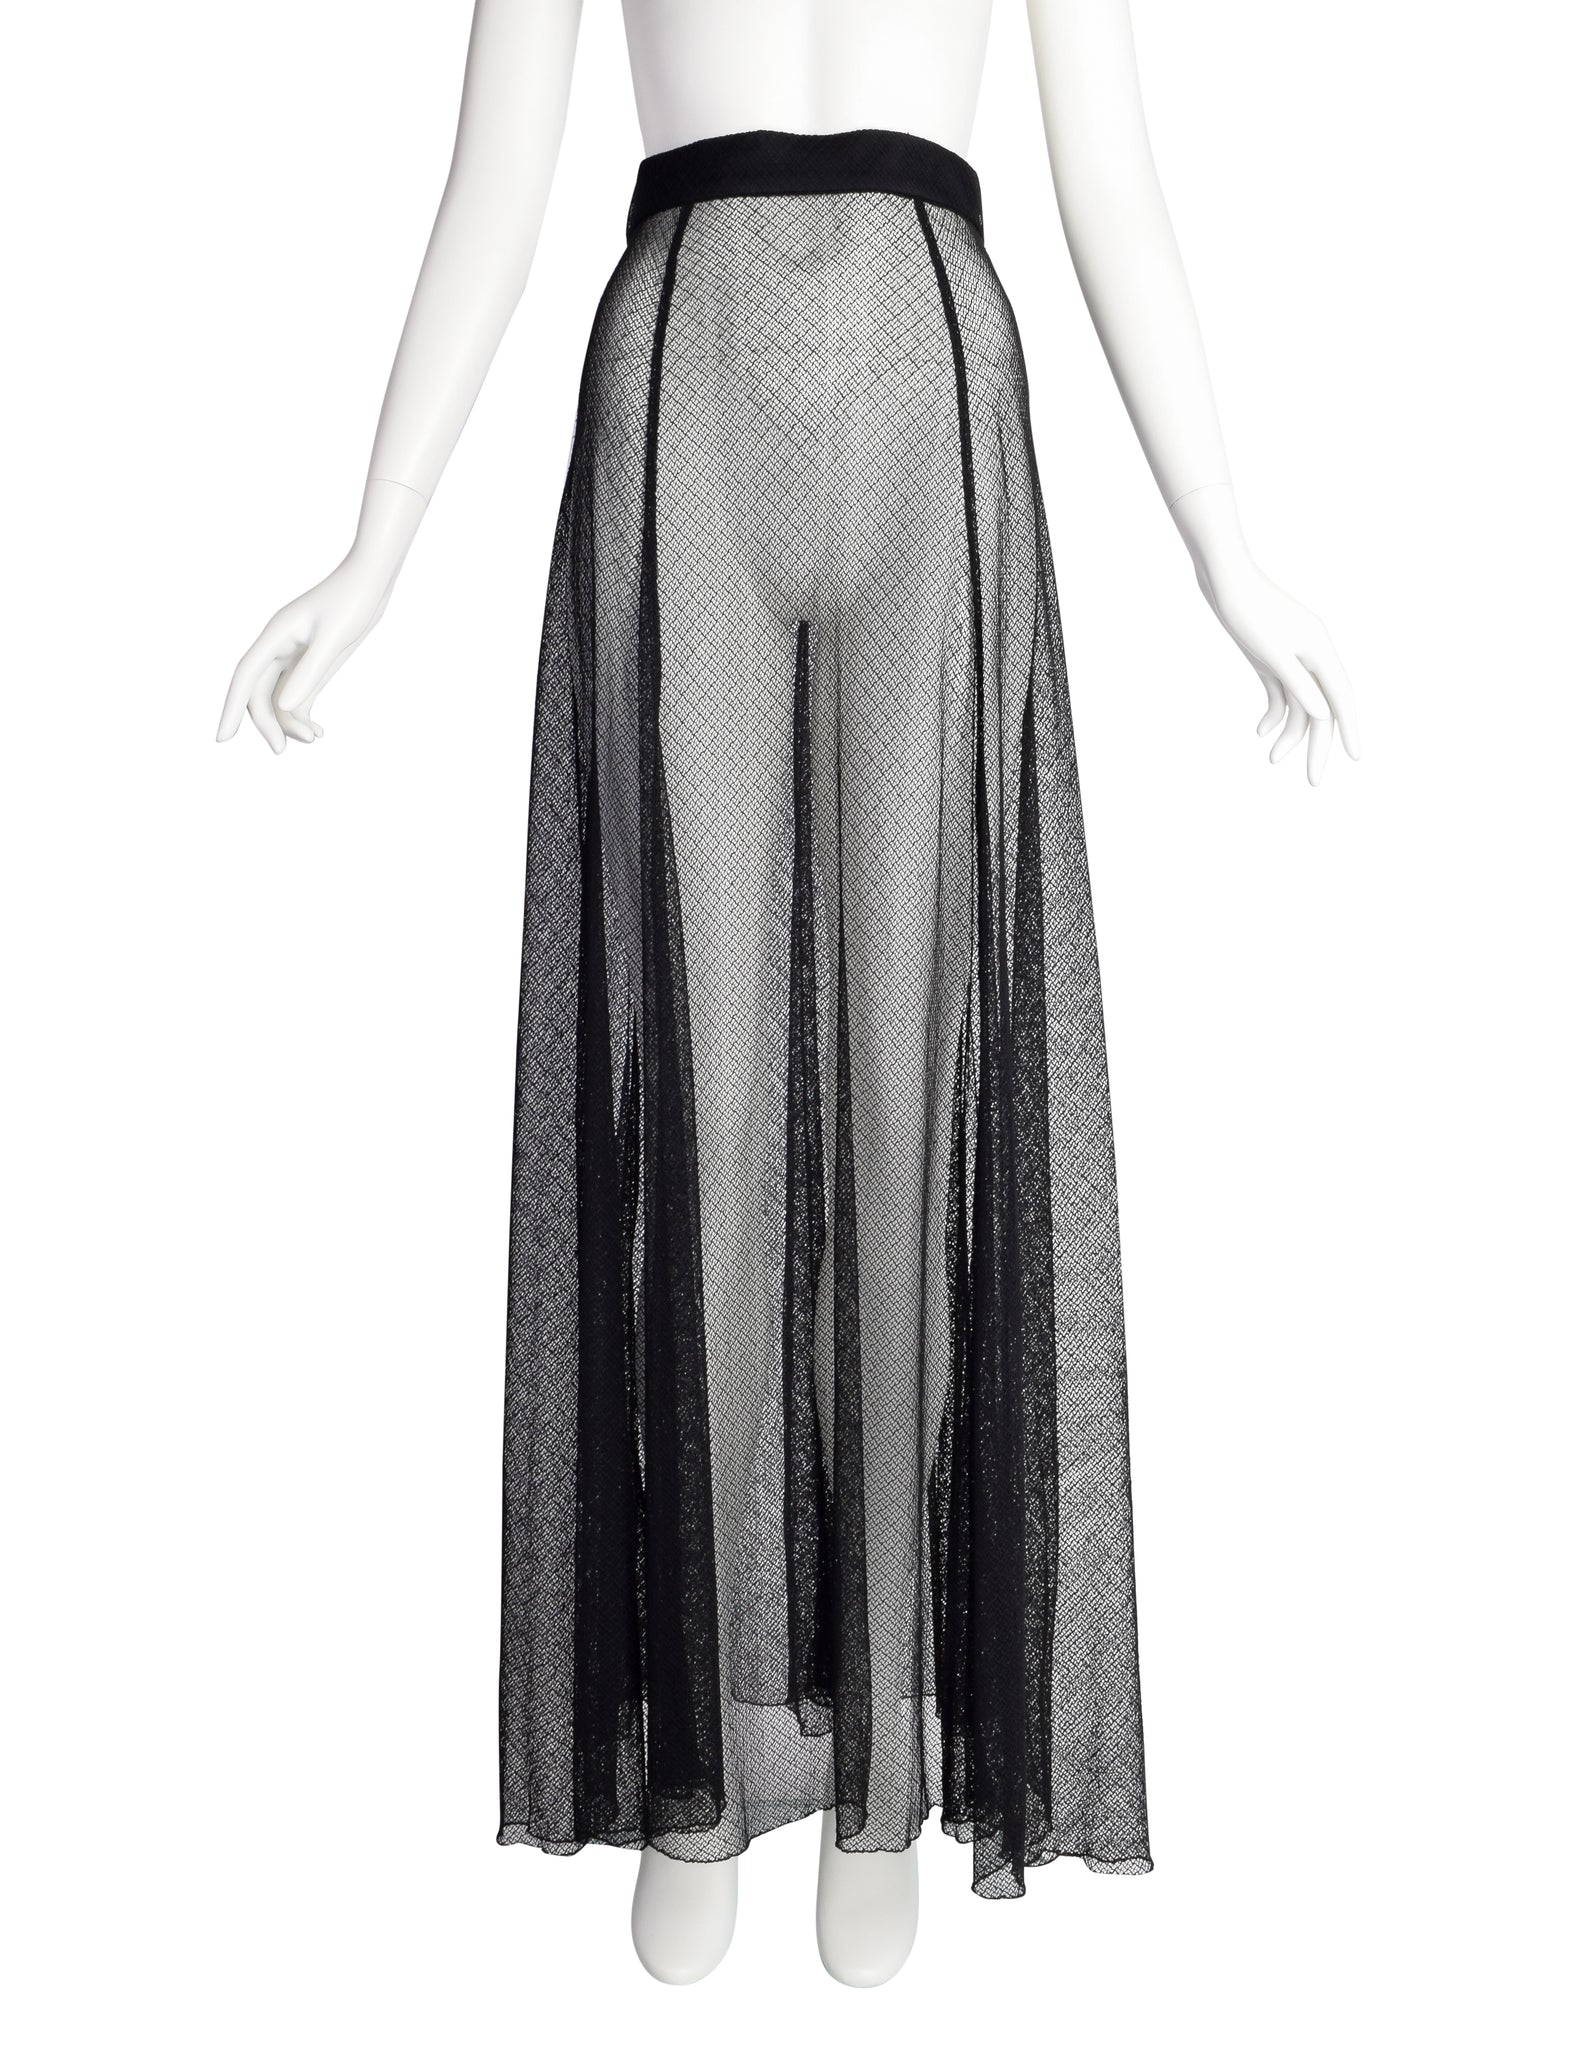 Karl Lagerfeld Vintage 1990s Black Sheer Intricate Mesh Net Full Length Skirt